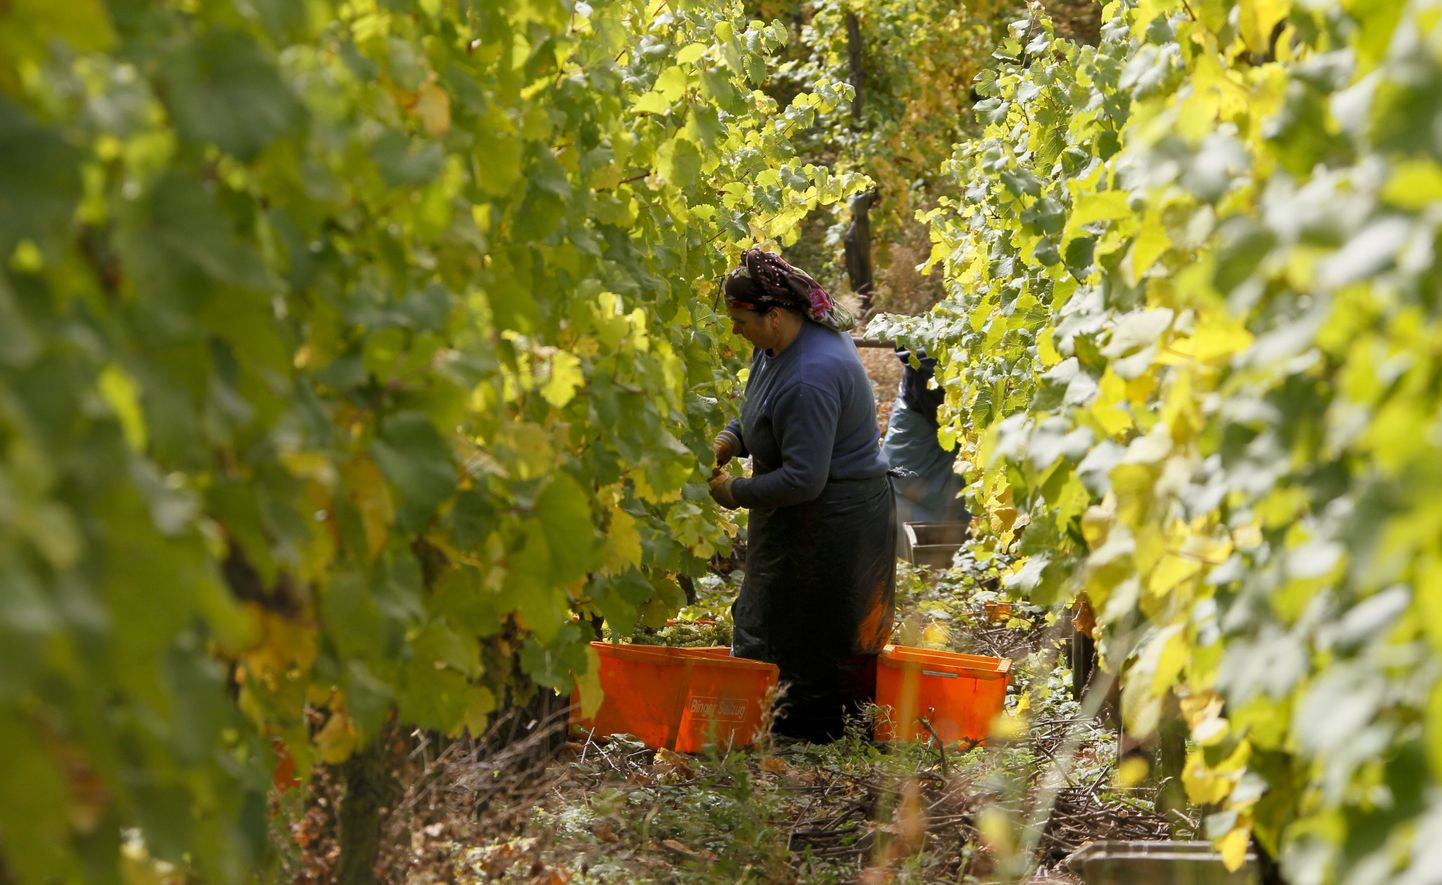 Hiinlaste kätte on lühikese ajaga läinud 40 Bordeaux veinilossi.